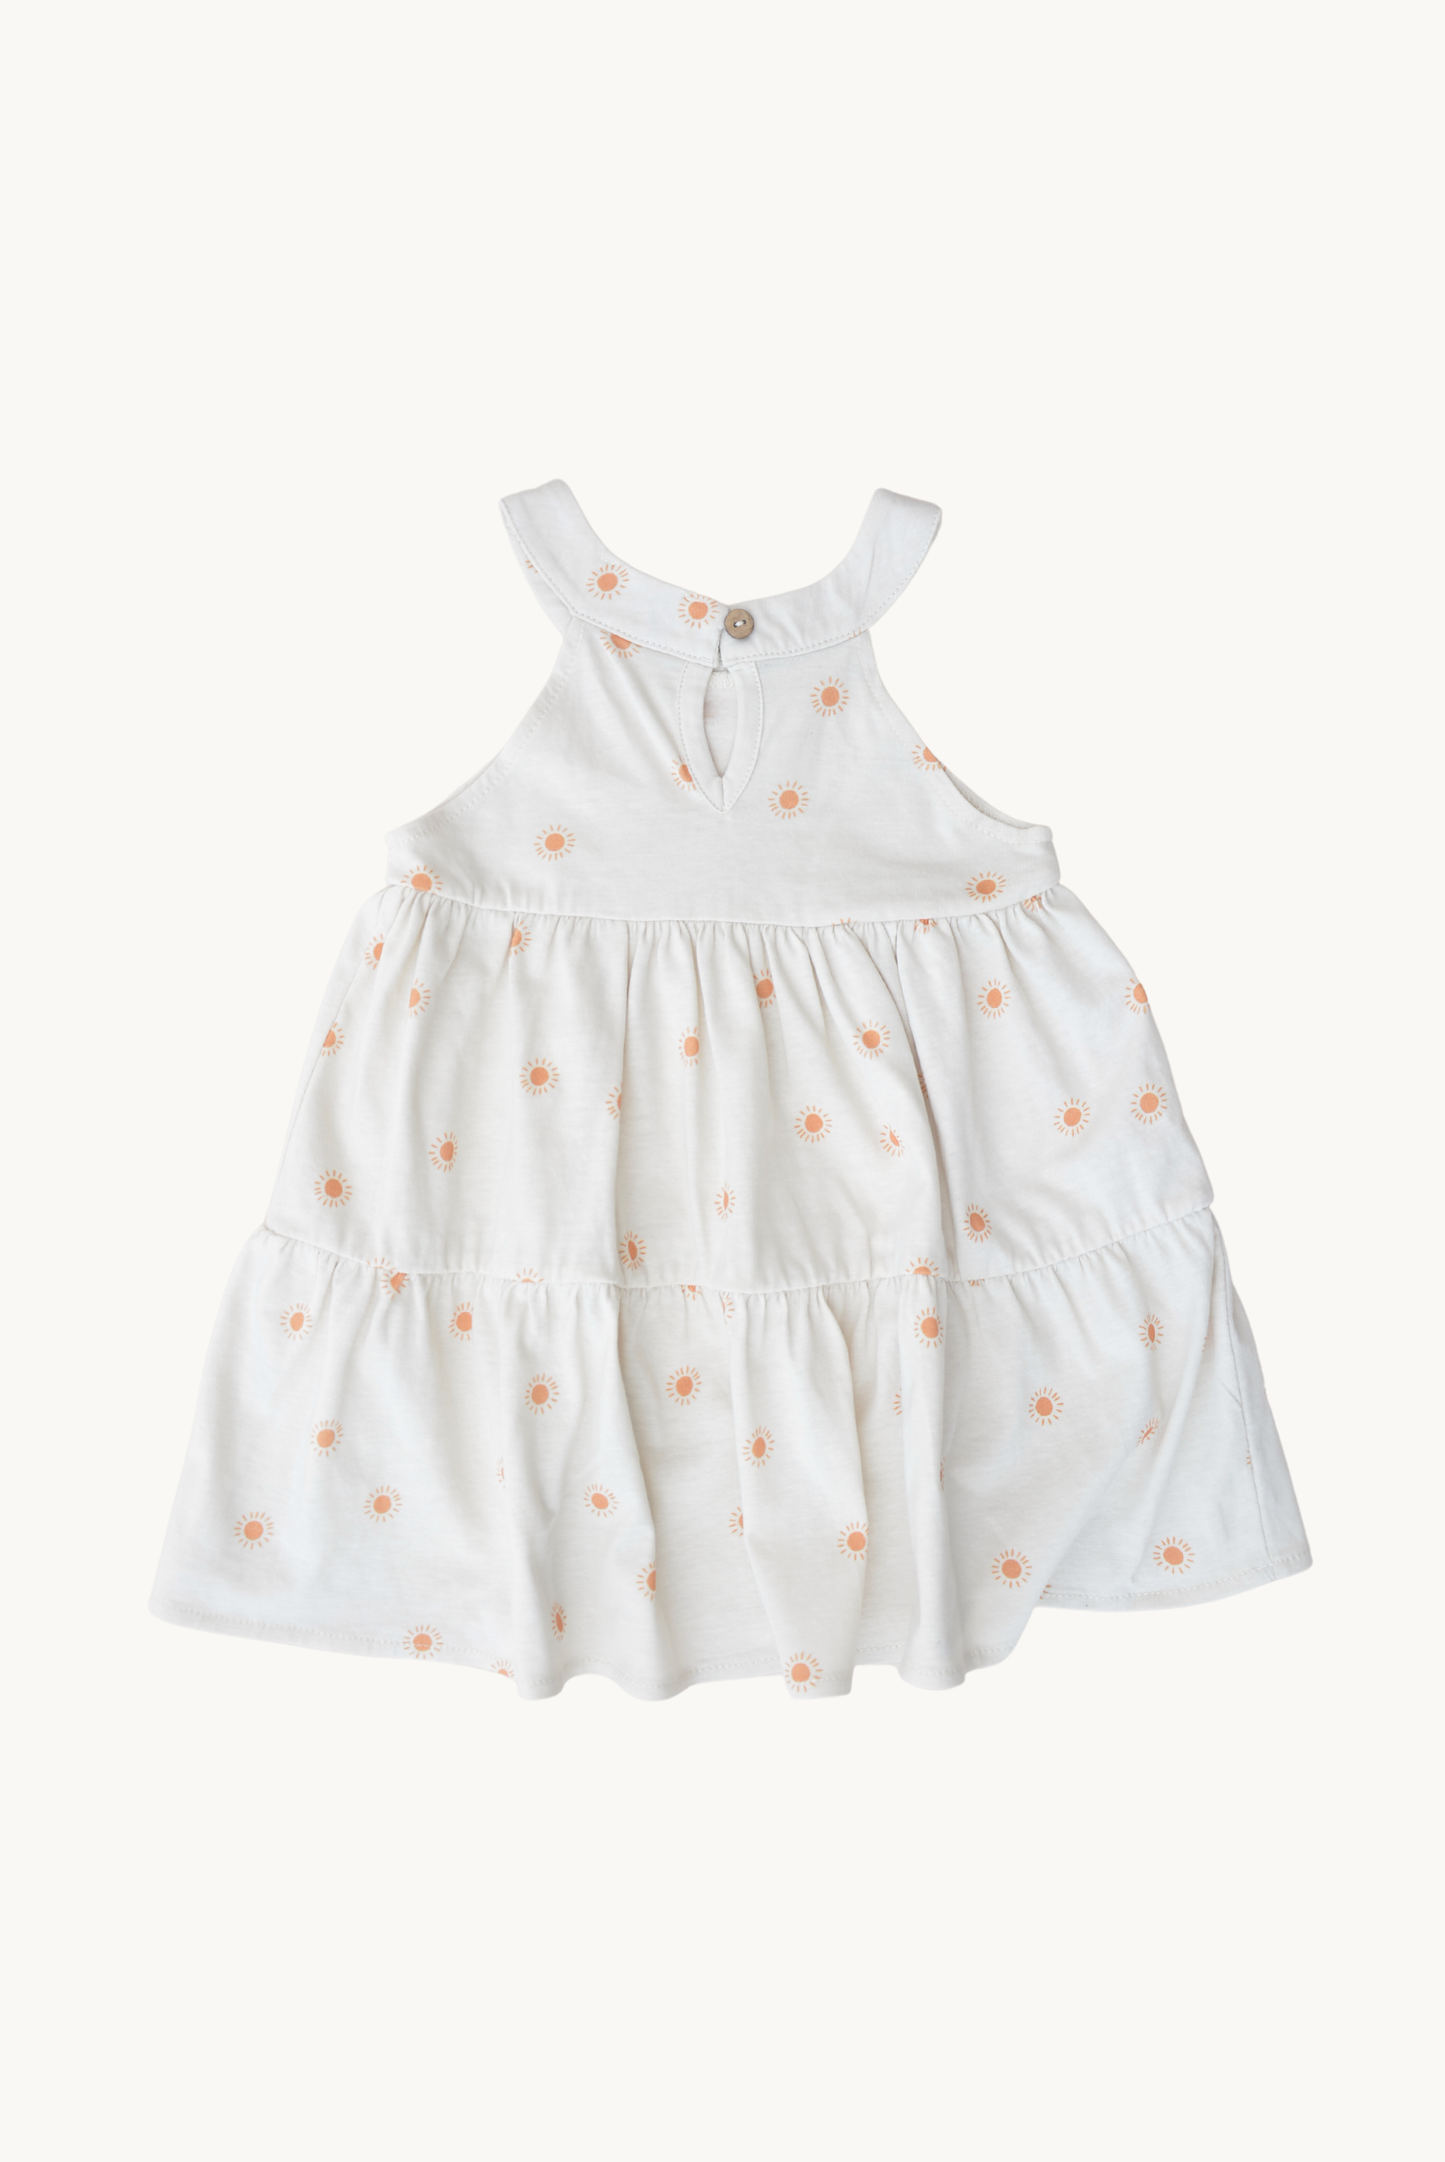 Eli & Nev - Baby / Girl Summer Dress